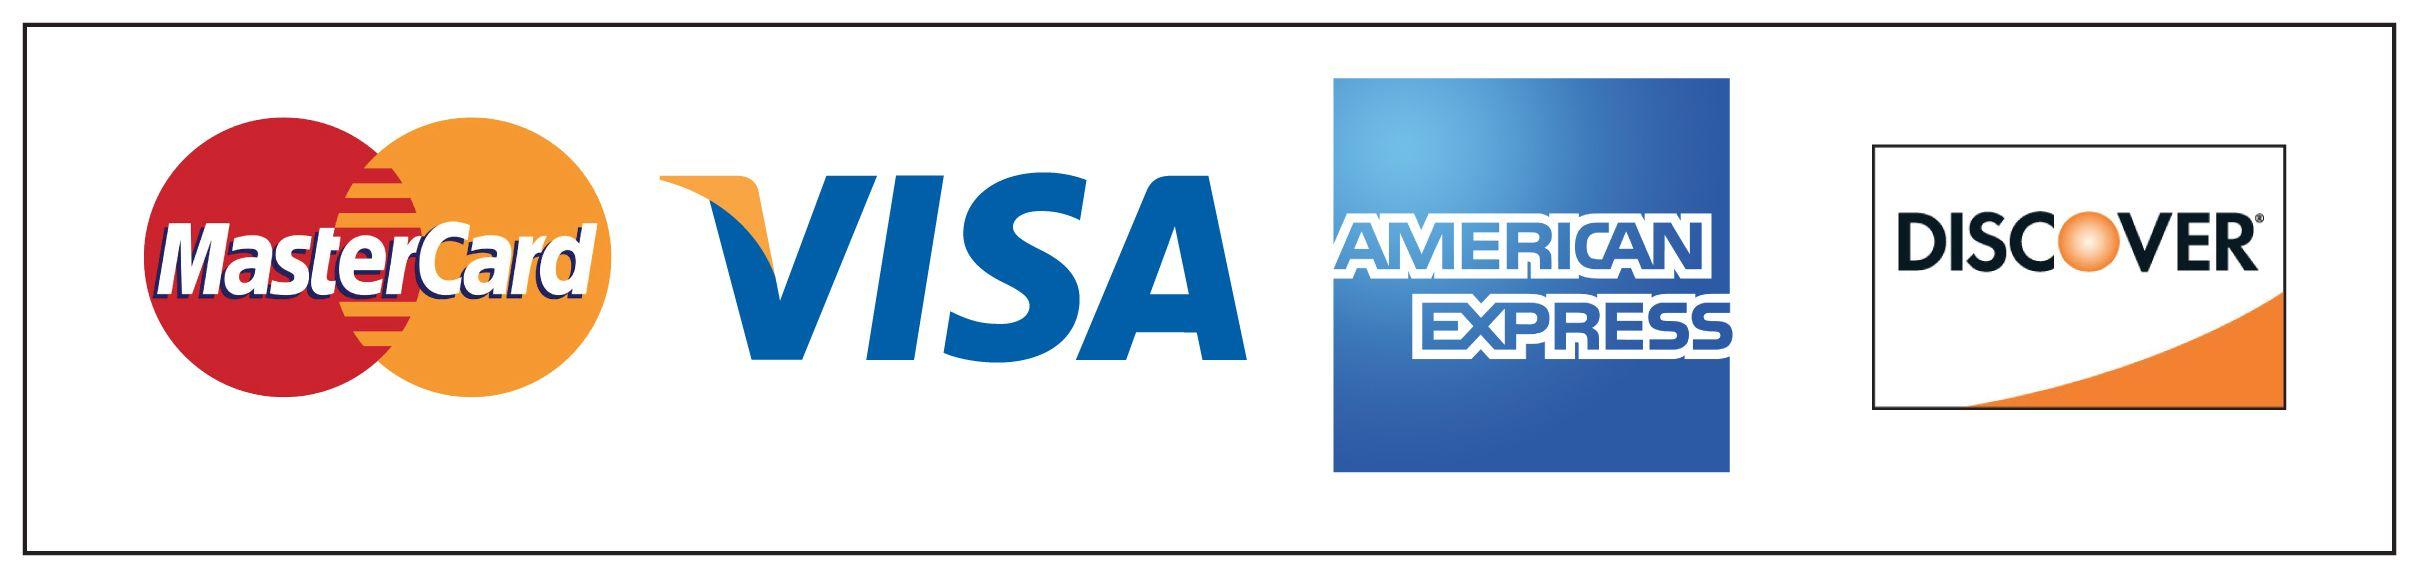 Printable Visa MasterCard Discover Logo - LogoDix